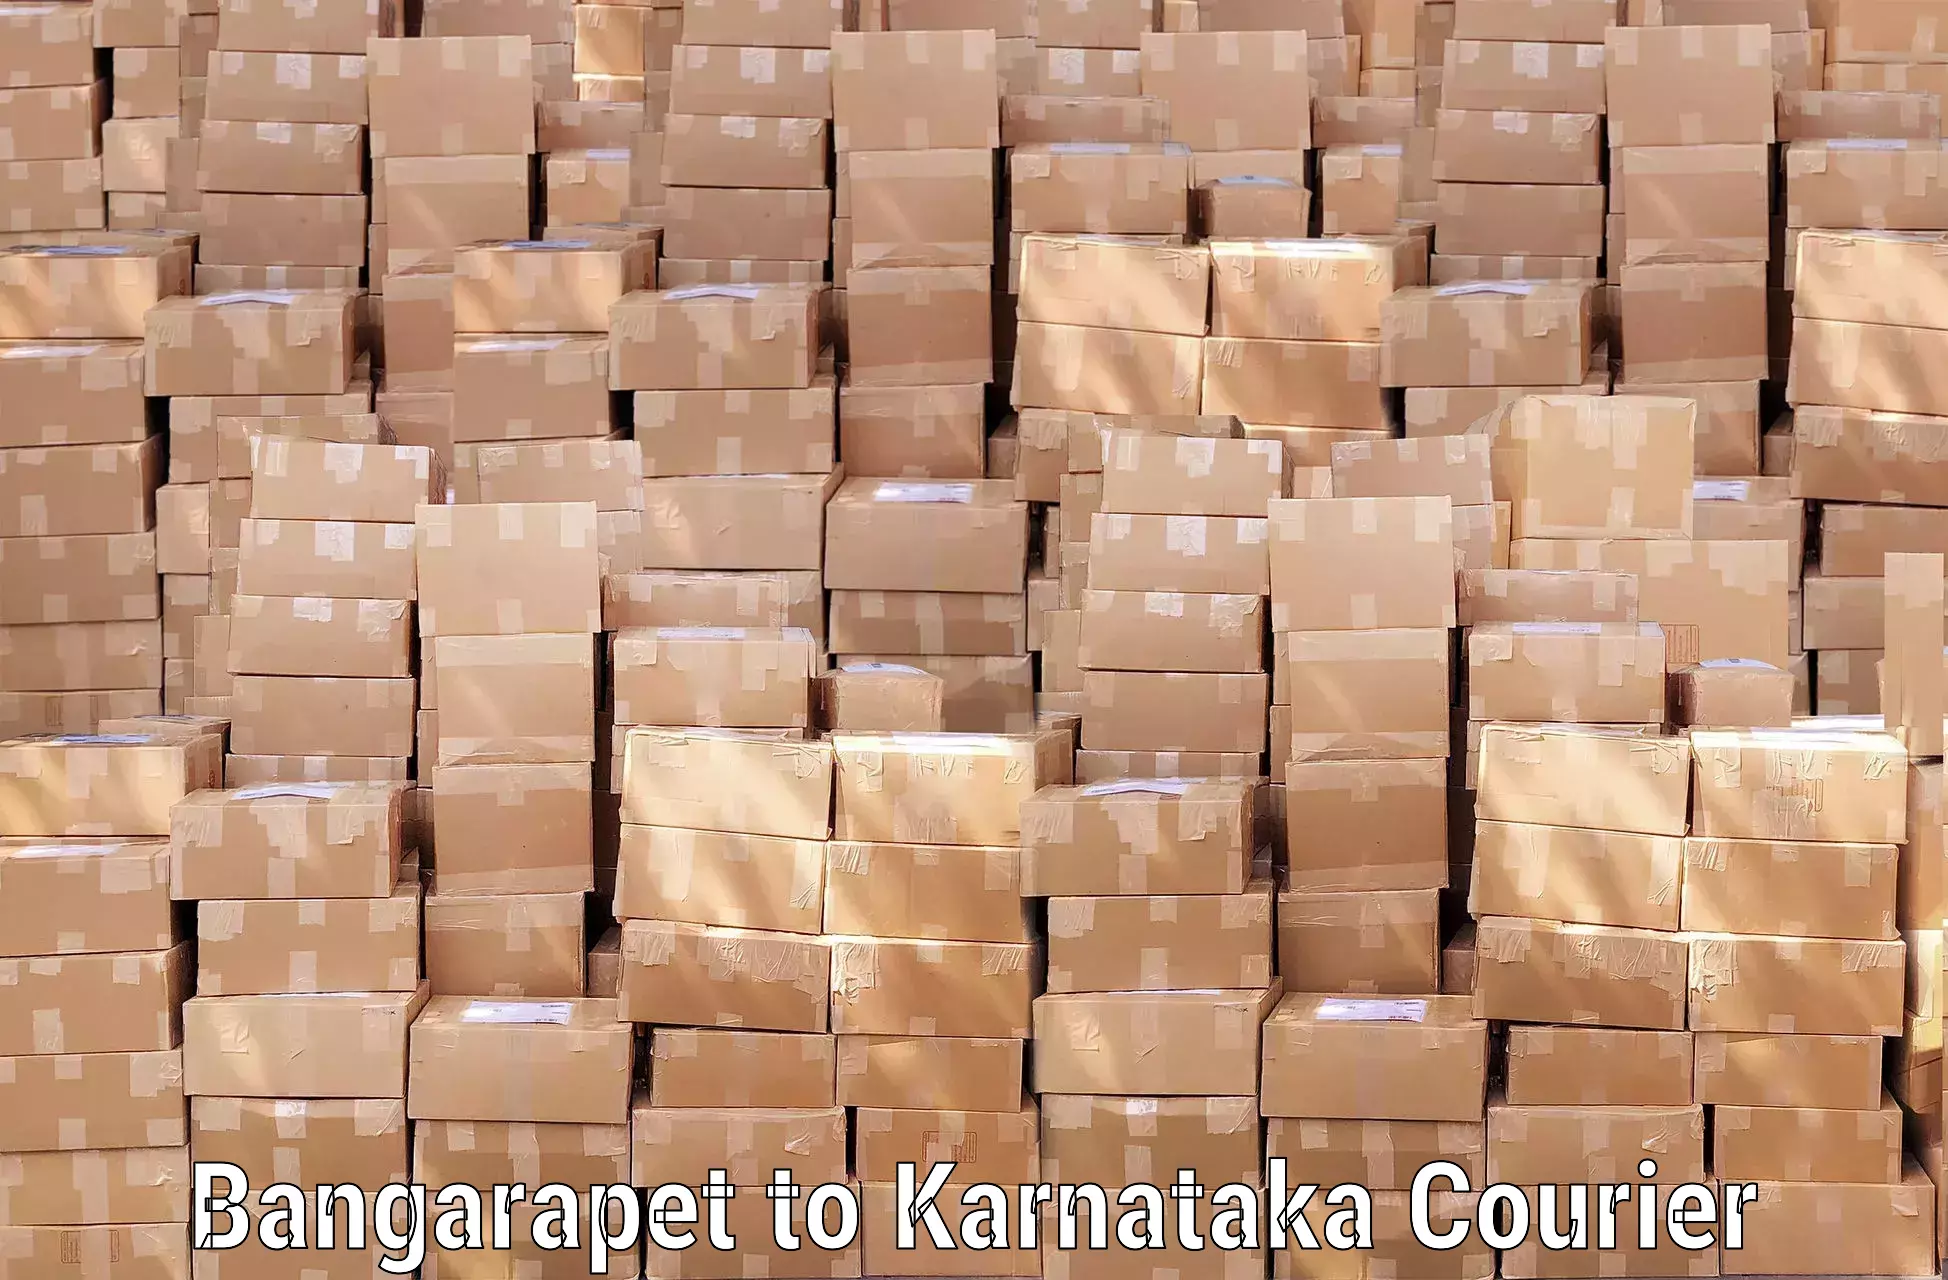 Personal baggage courier Bangarapet to Karnataka